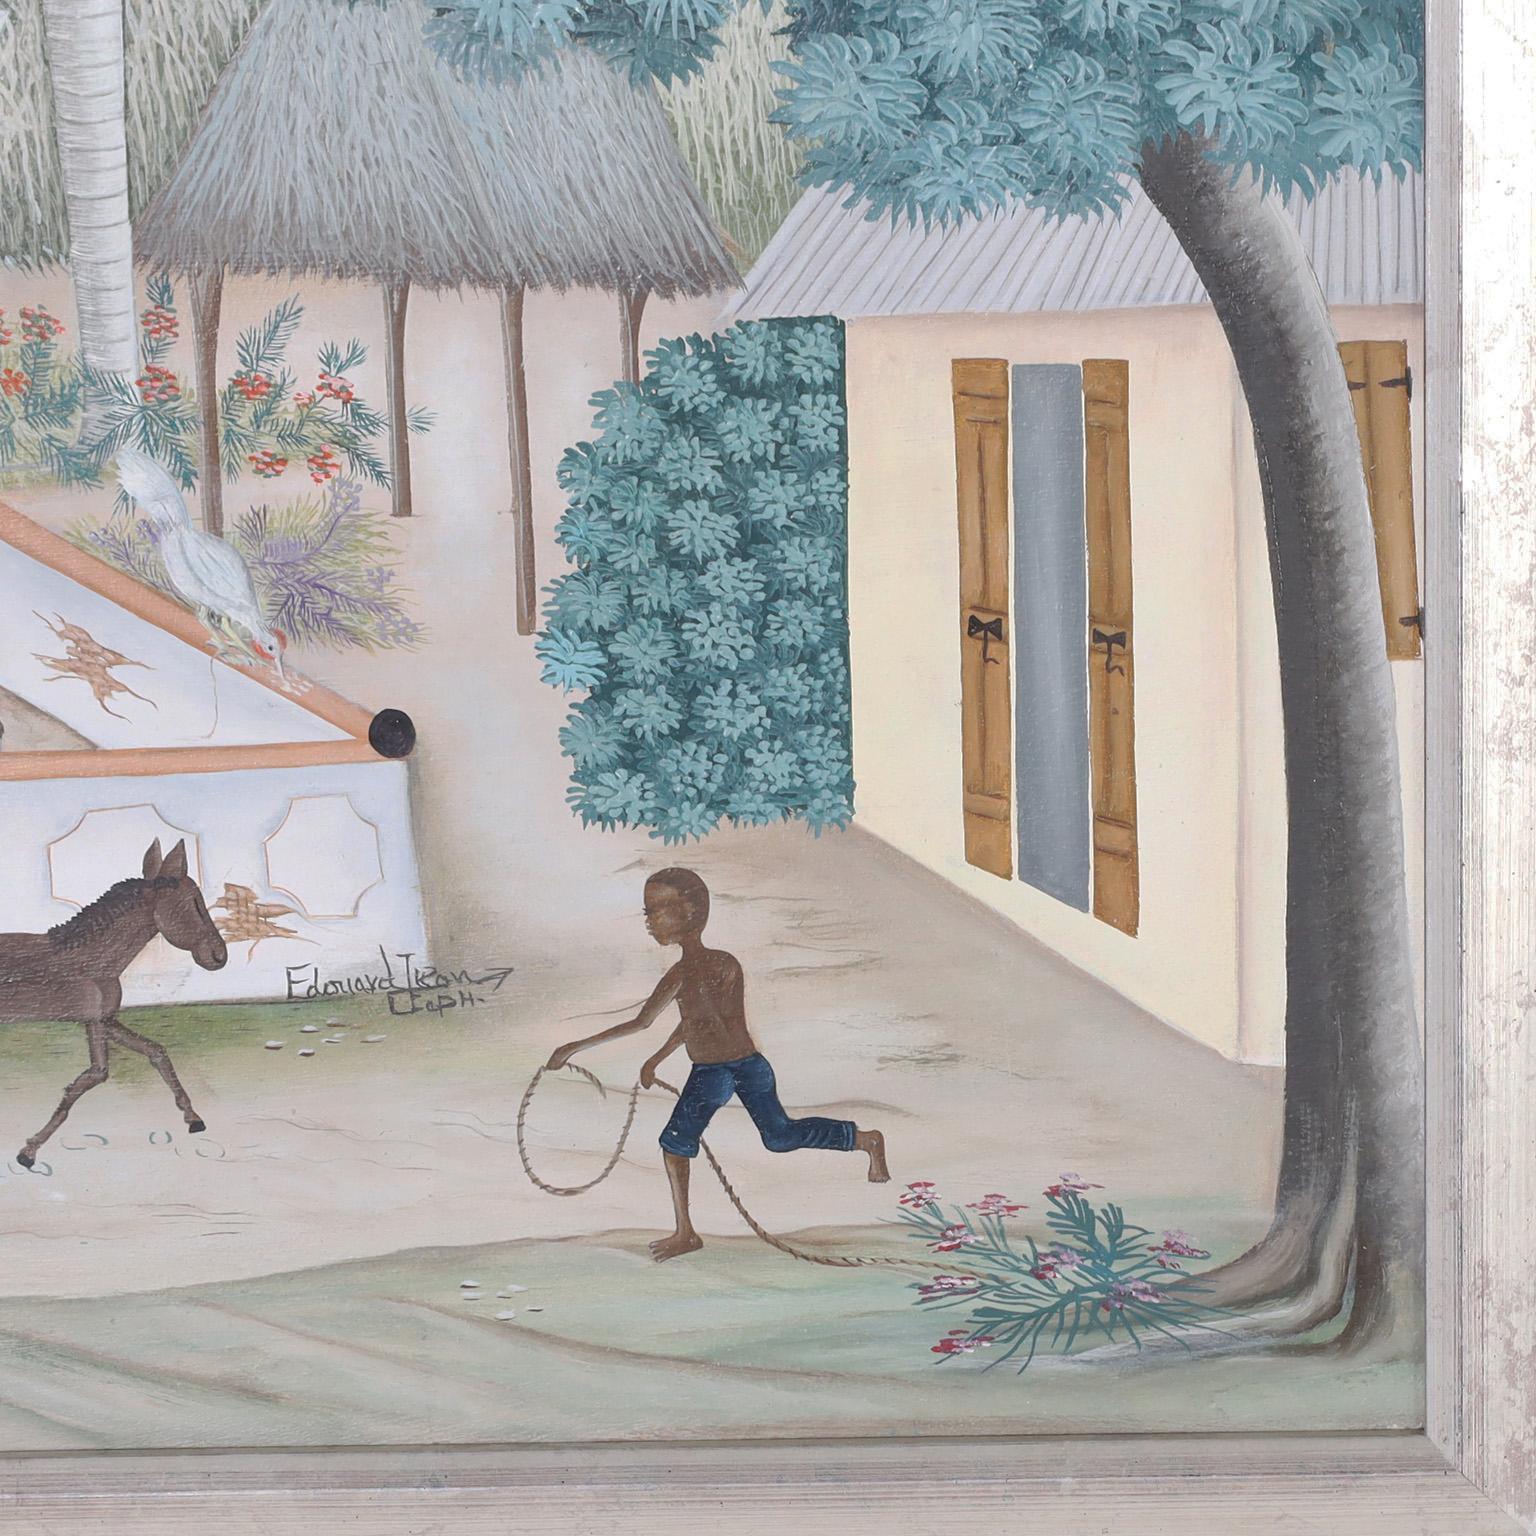 Charmante peinture à l'huile sur toile représentant un village haïtien serein avec des arbres, des fleurs, des oiseaux et des figures ludiques dans un style folklorique naïf. Signé par le célèbre artiste Edouard Tran et présenté dans un cadre en